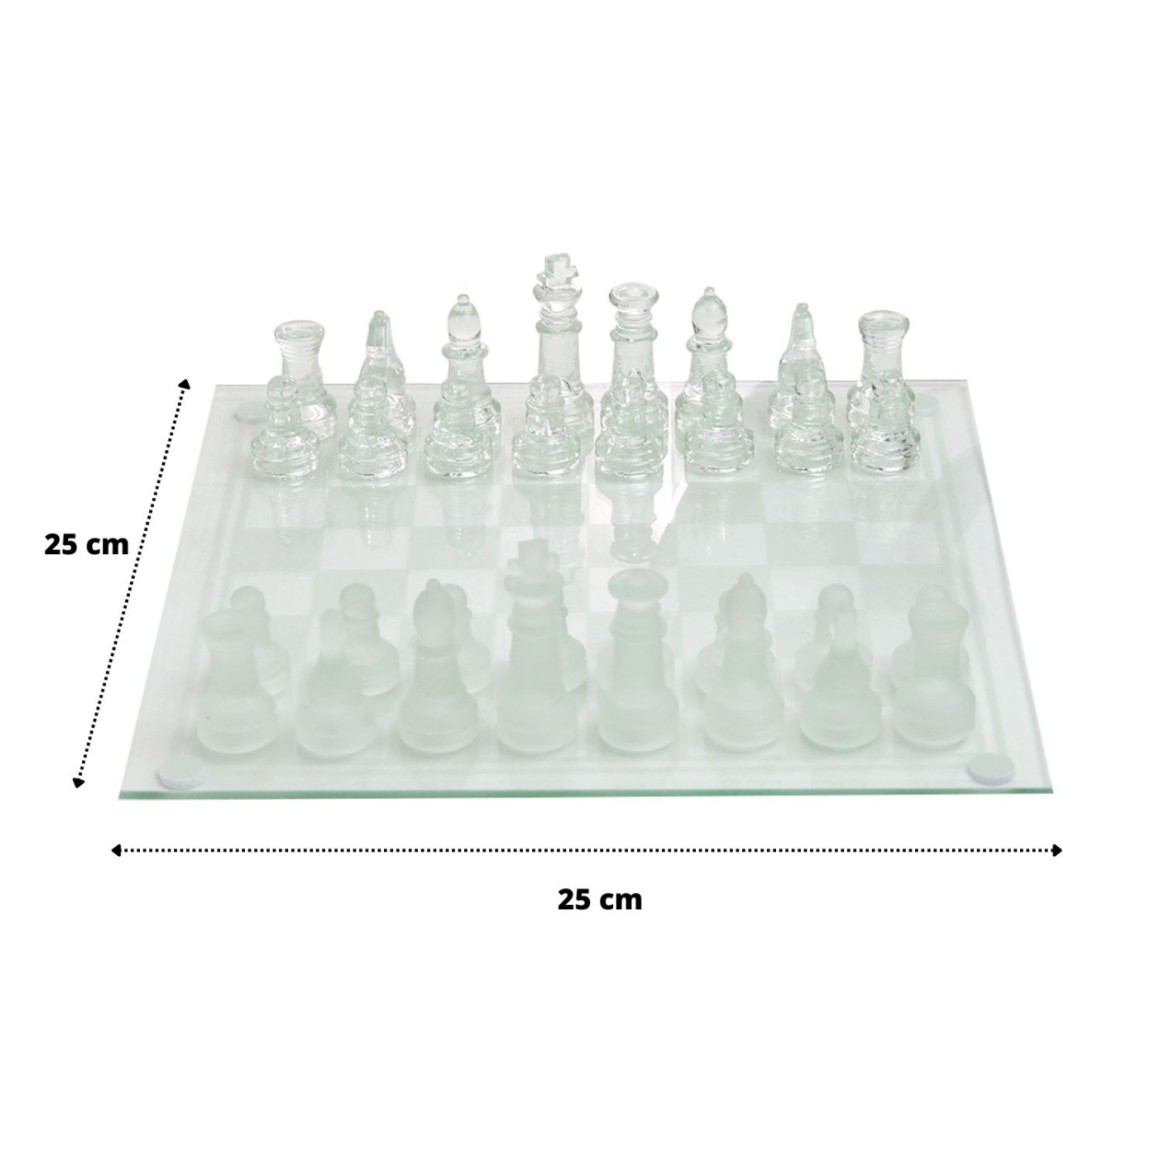 Um tabuleiro de xadrez com fundo preto e um jogo de xadrez de vidro.